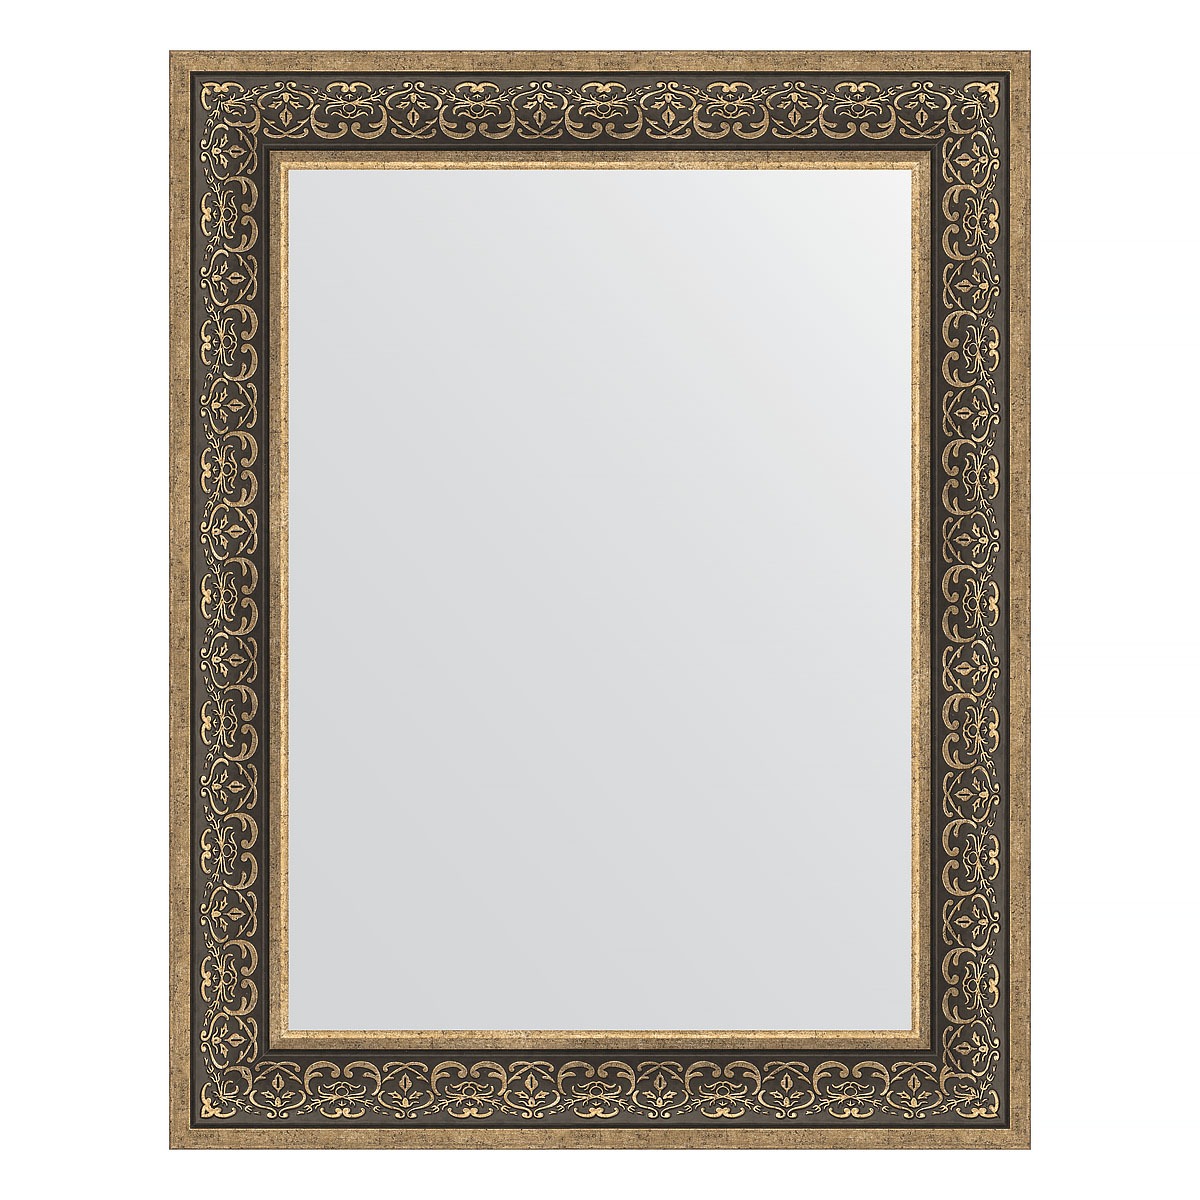 Зеркало в багетной раме Evoform вензель серебряный 101 мм 73х93 см